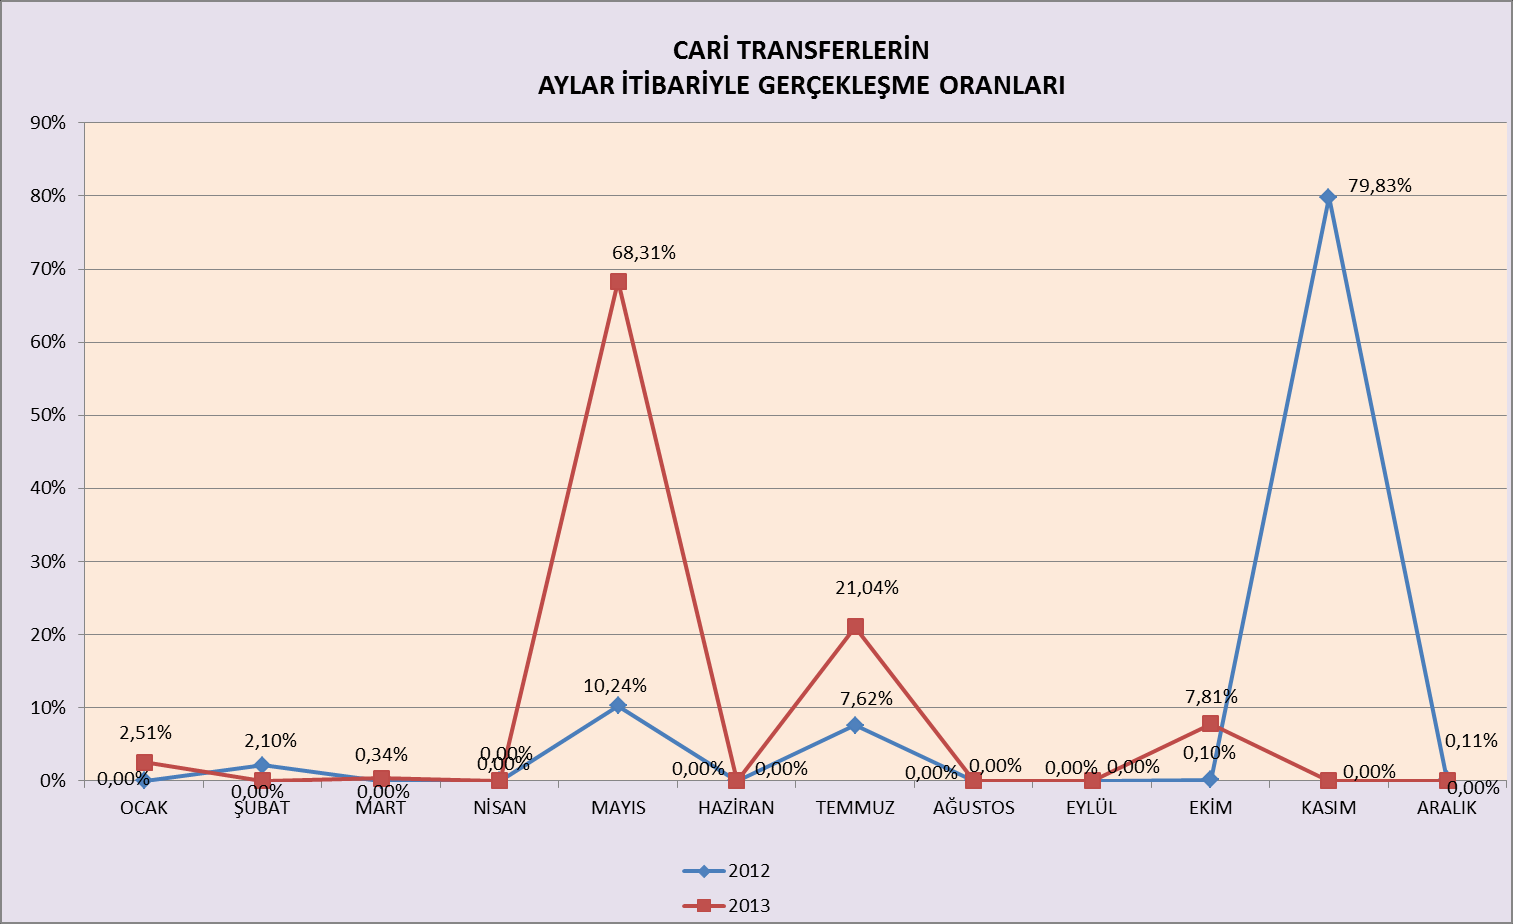 Cari Transferlerin aylara göre dağılım grafikleri